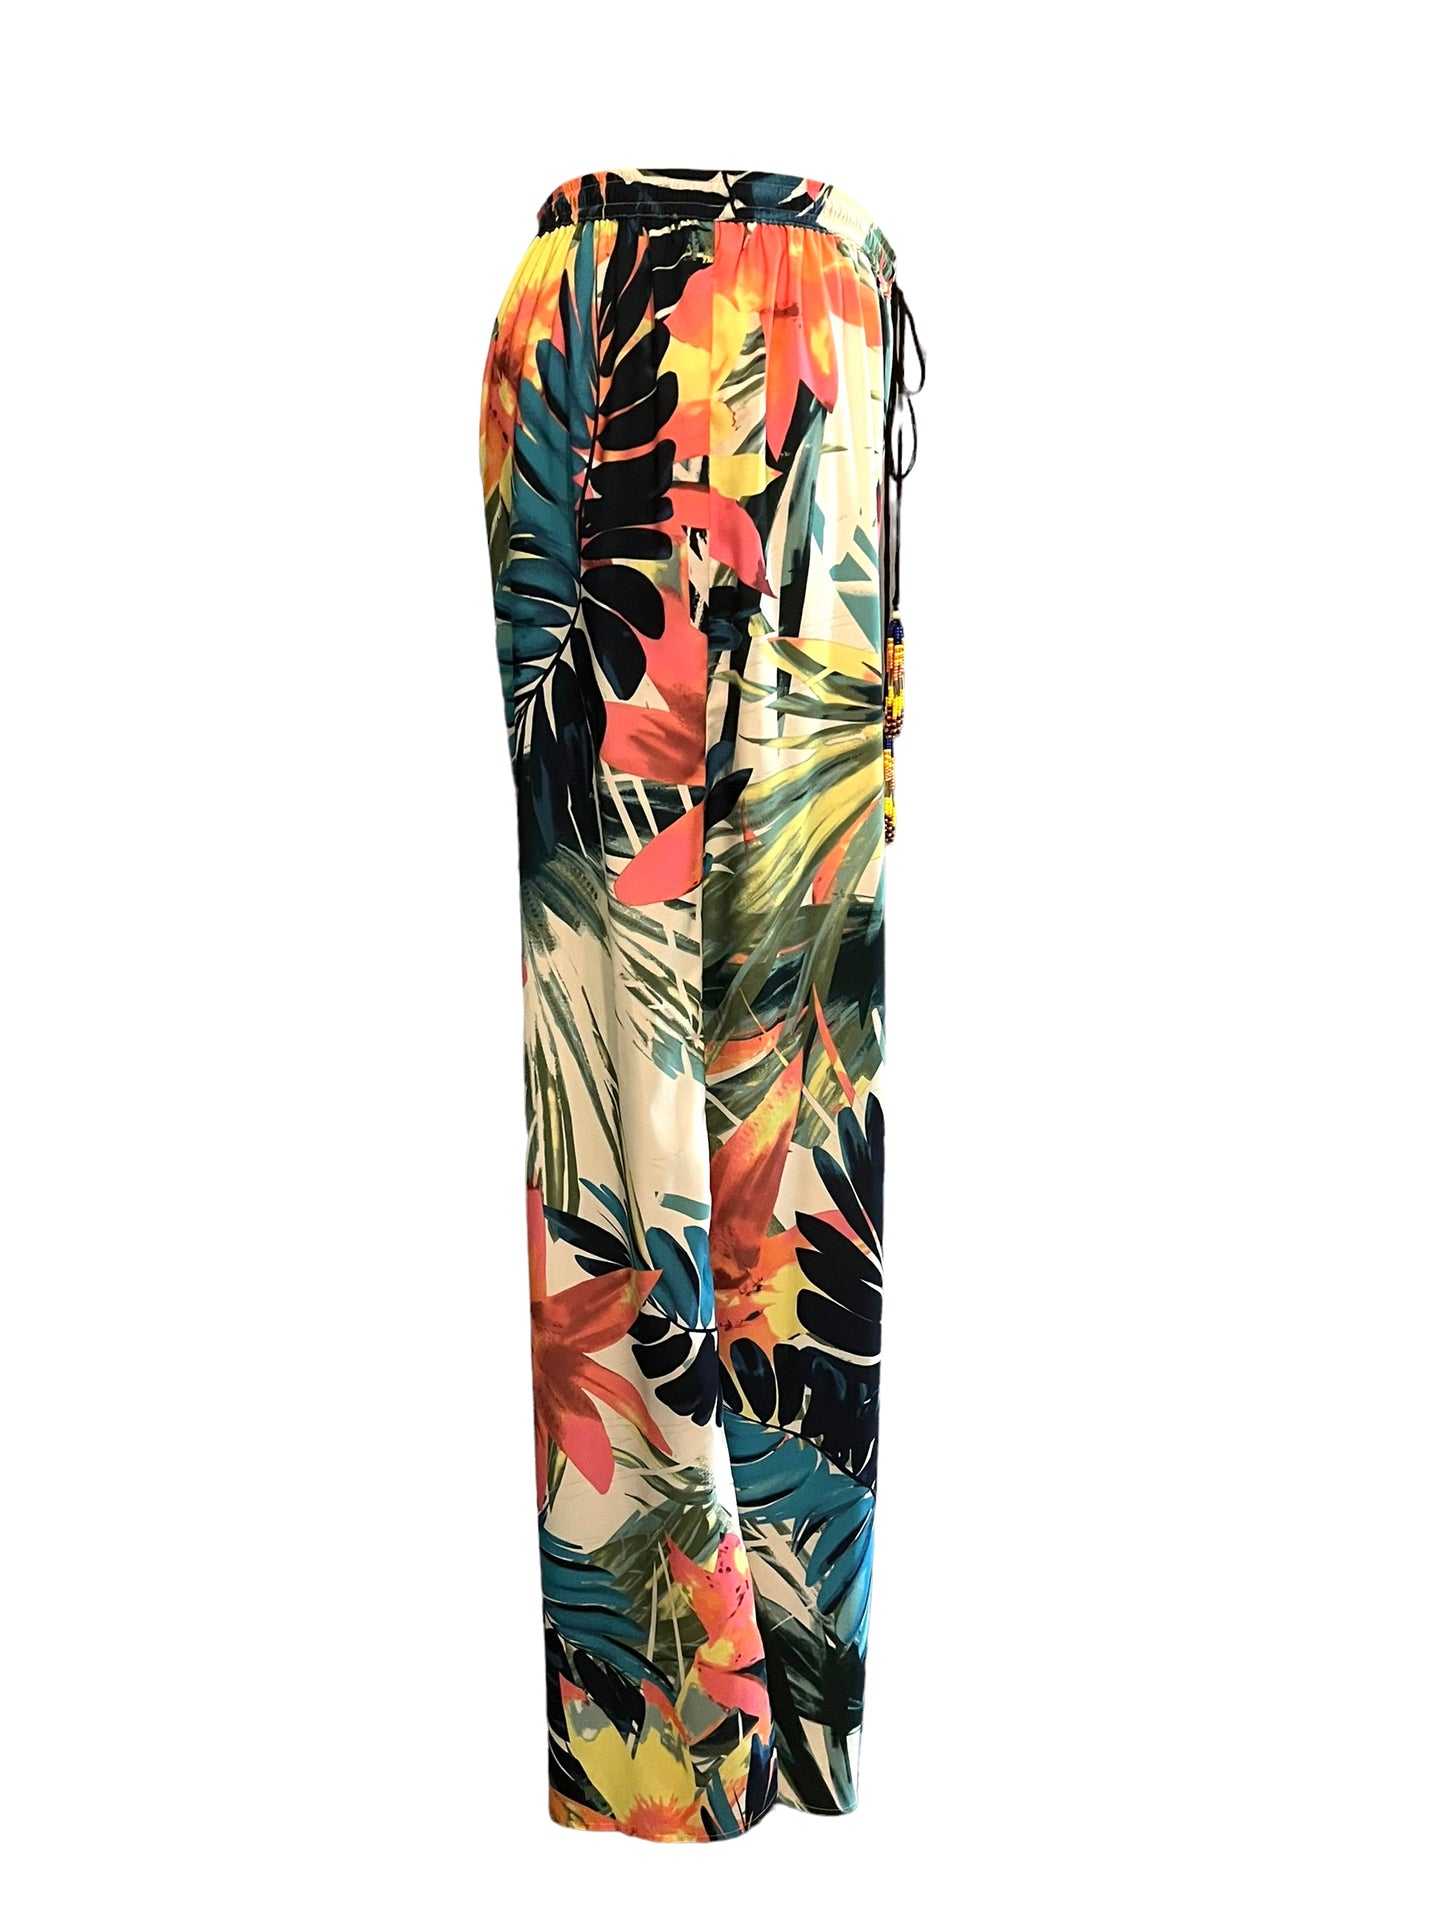 Artelier Nicole Miller Size L Multicolor Floral Lounge Pants